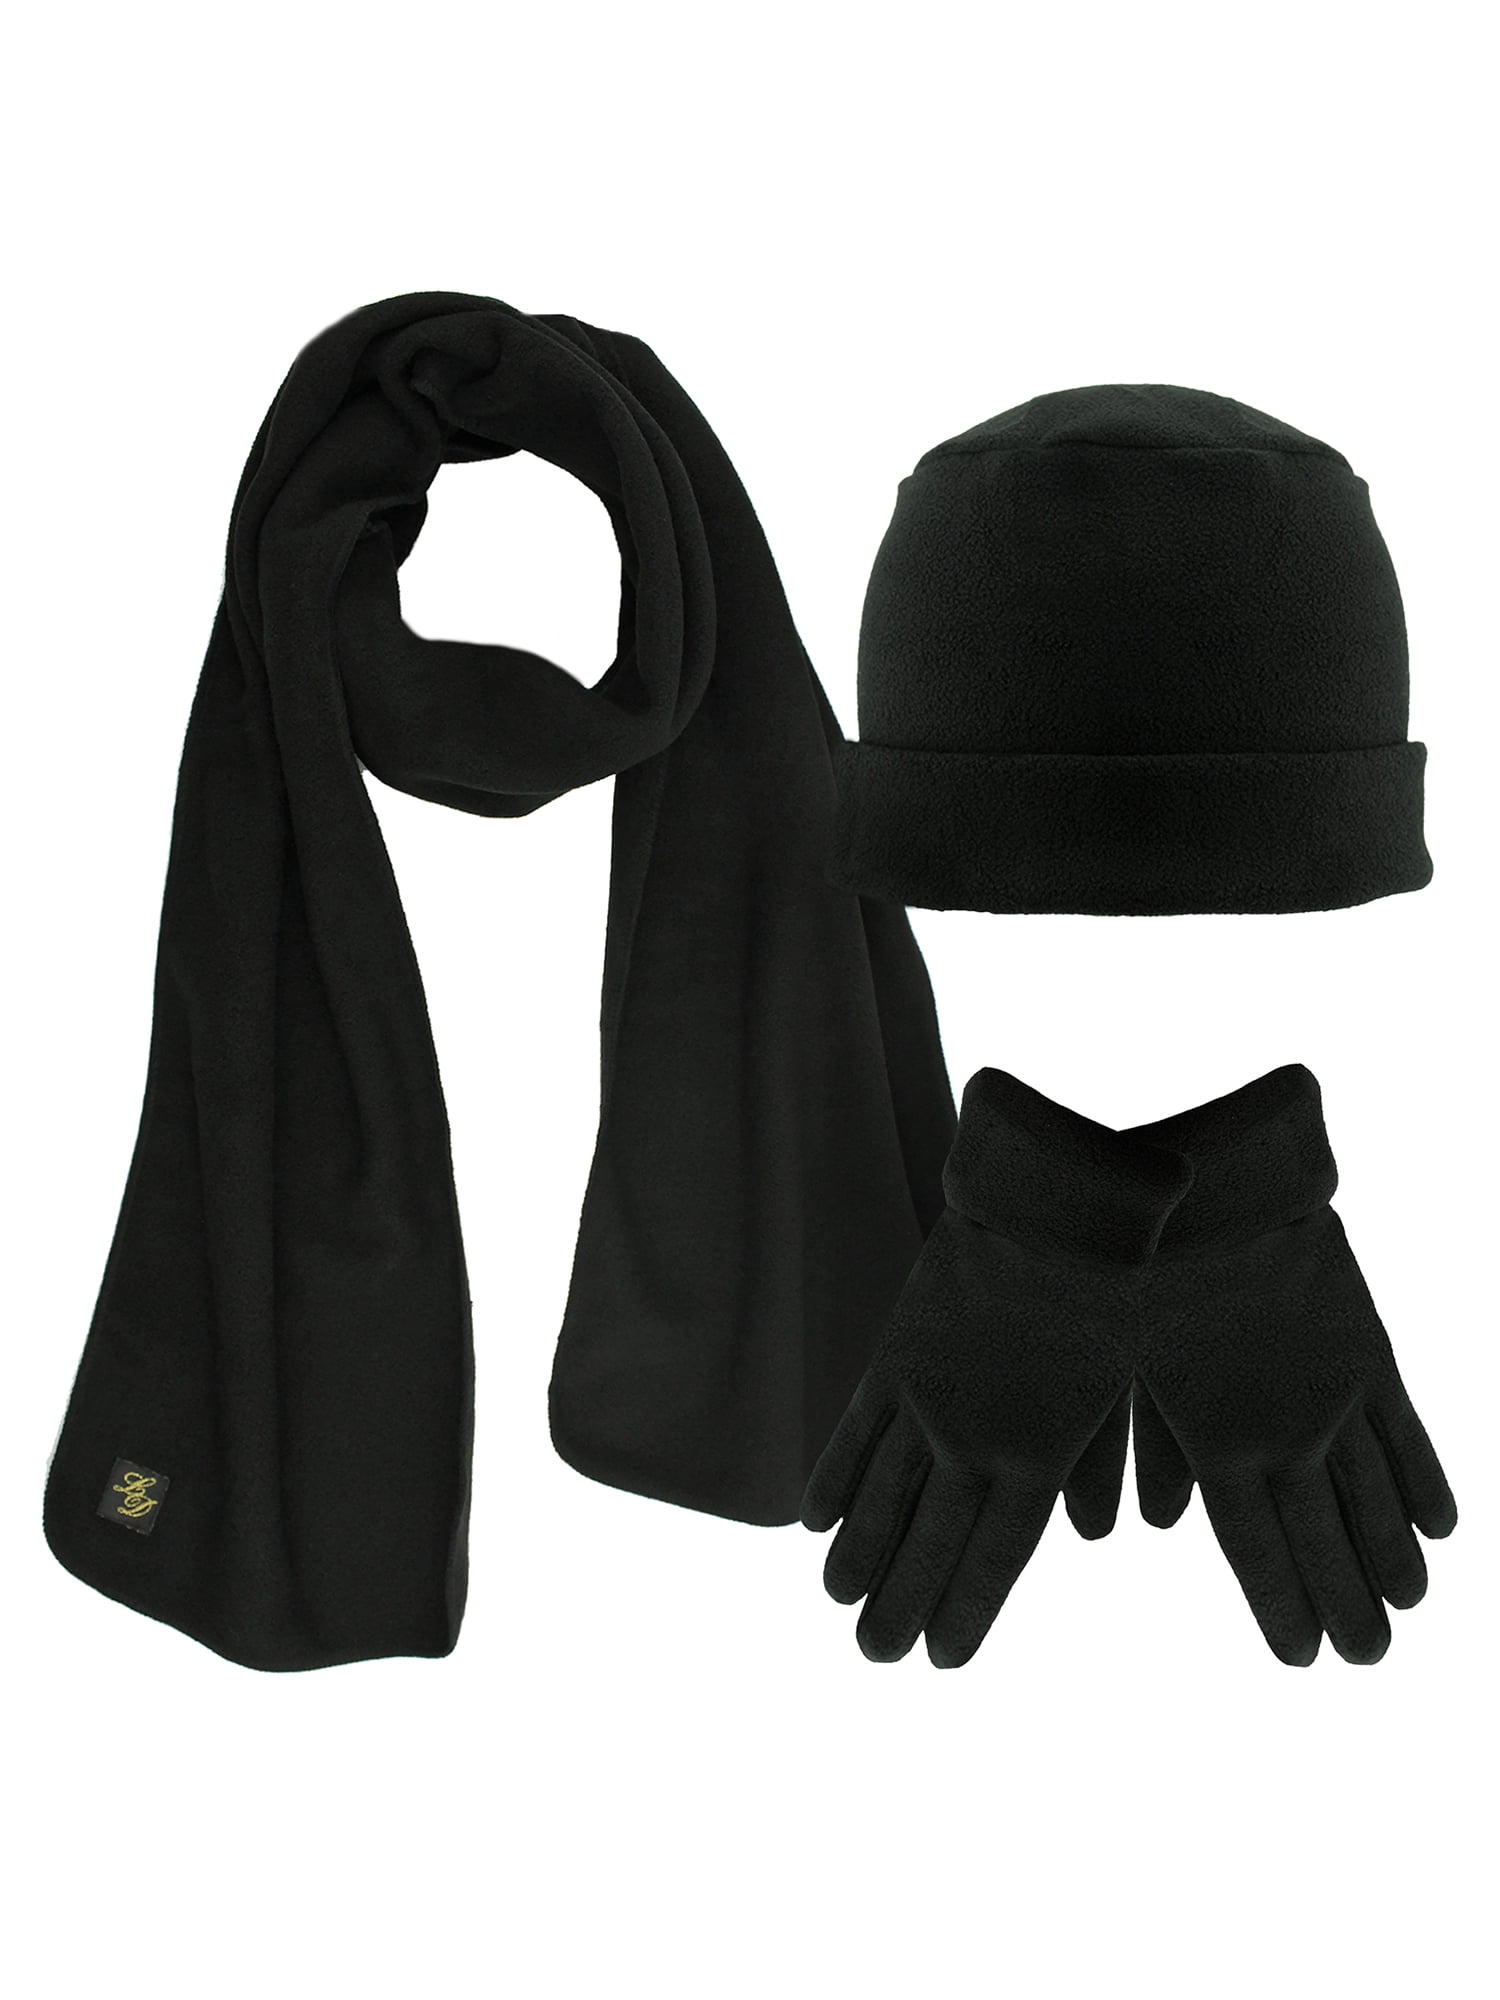 Knitted Deep Orange Hat Scarf Gloves 3 piece Set Warm Winter Present 